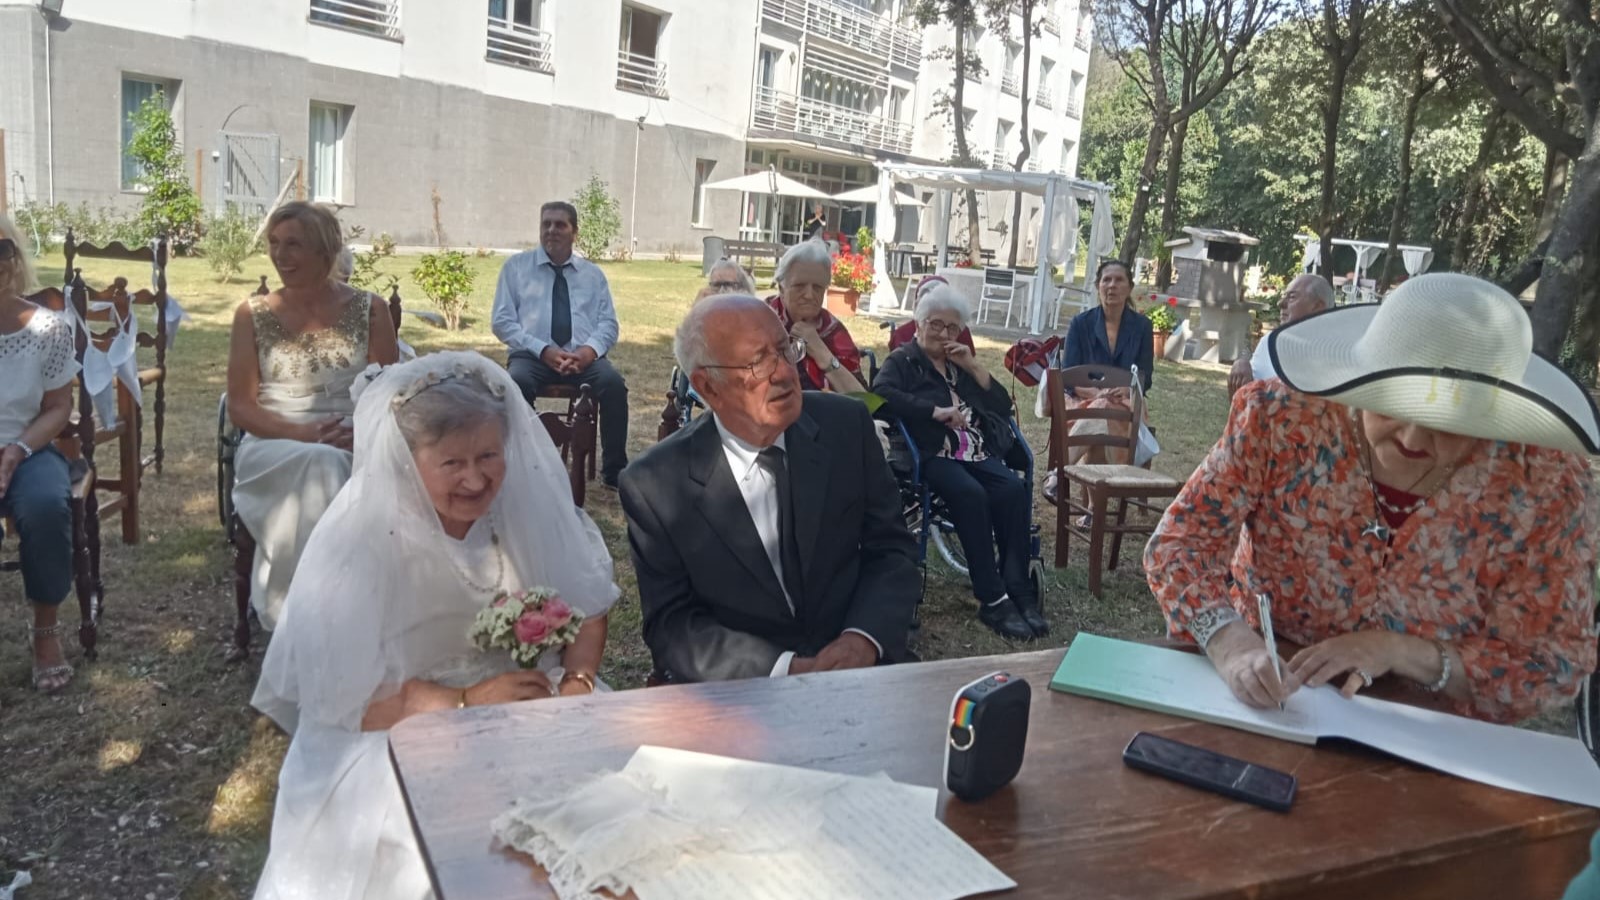 “Matrimonio all’Alfieri”: è andata in scena una cerimonia nuziale